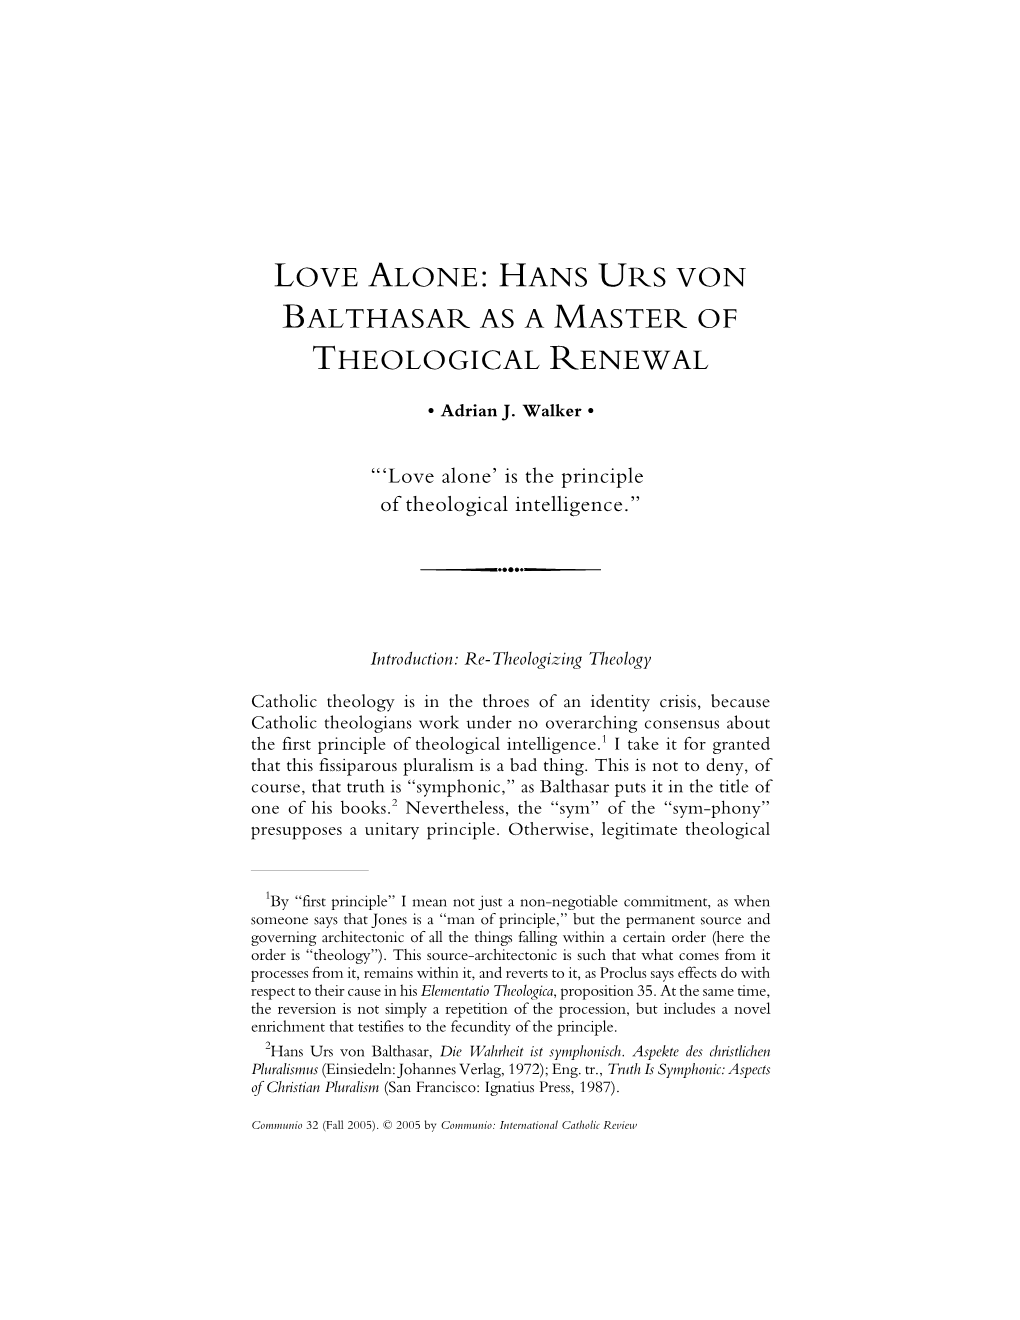 Adrian J. Walker Love Alone: Hans Urs Von Balthasar As a Master Of